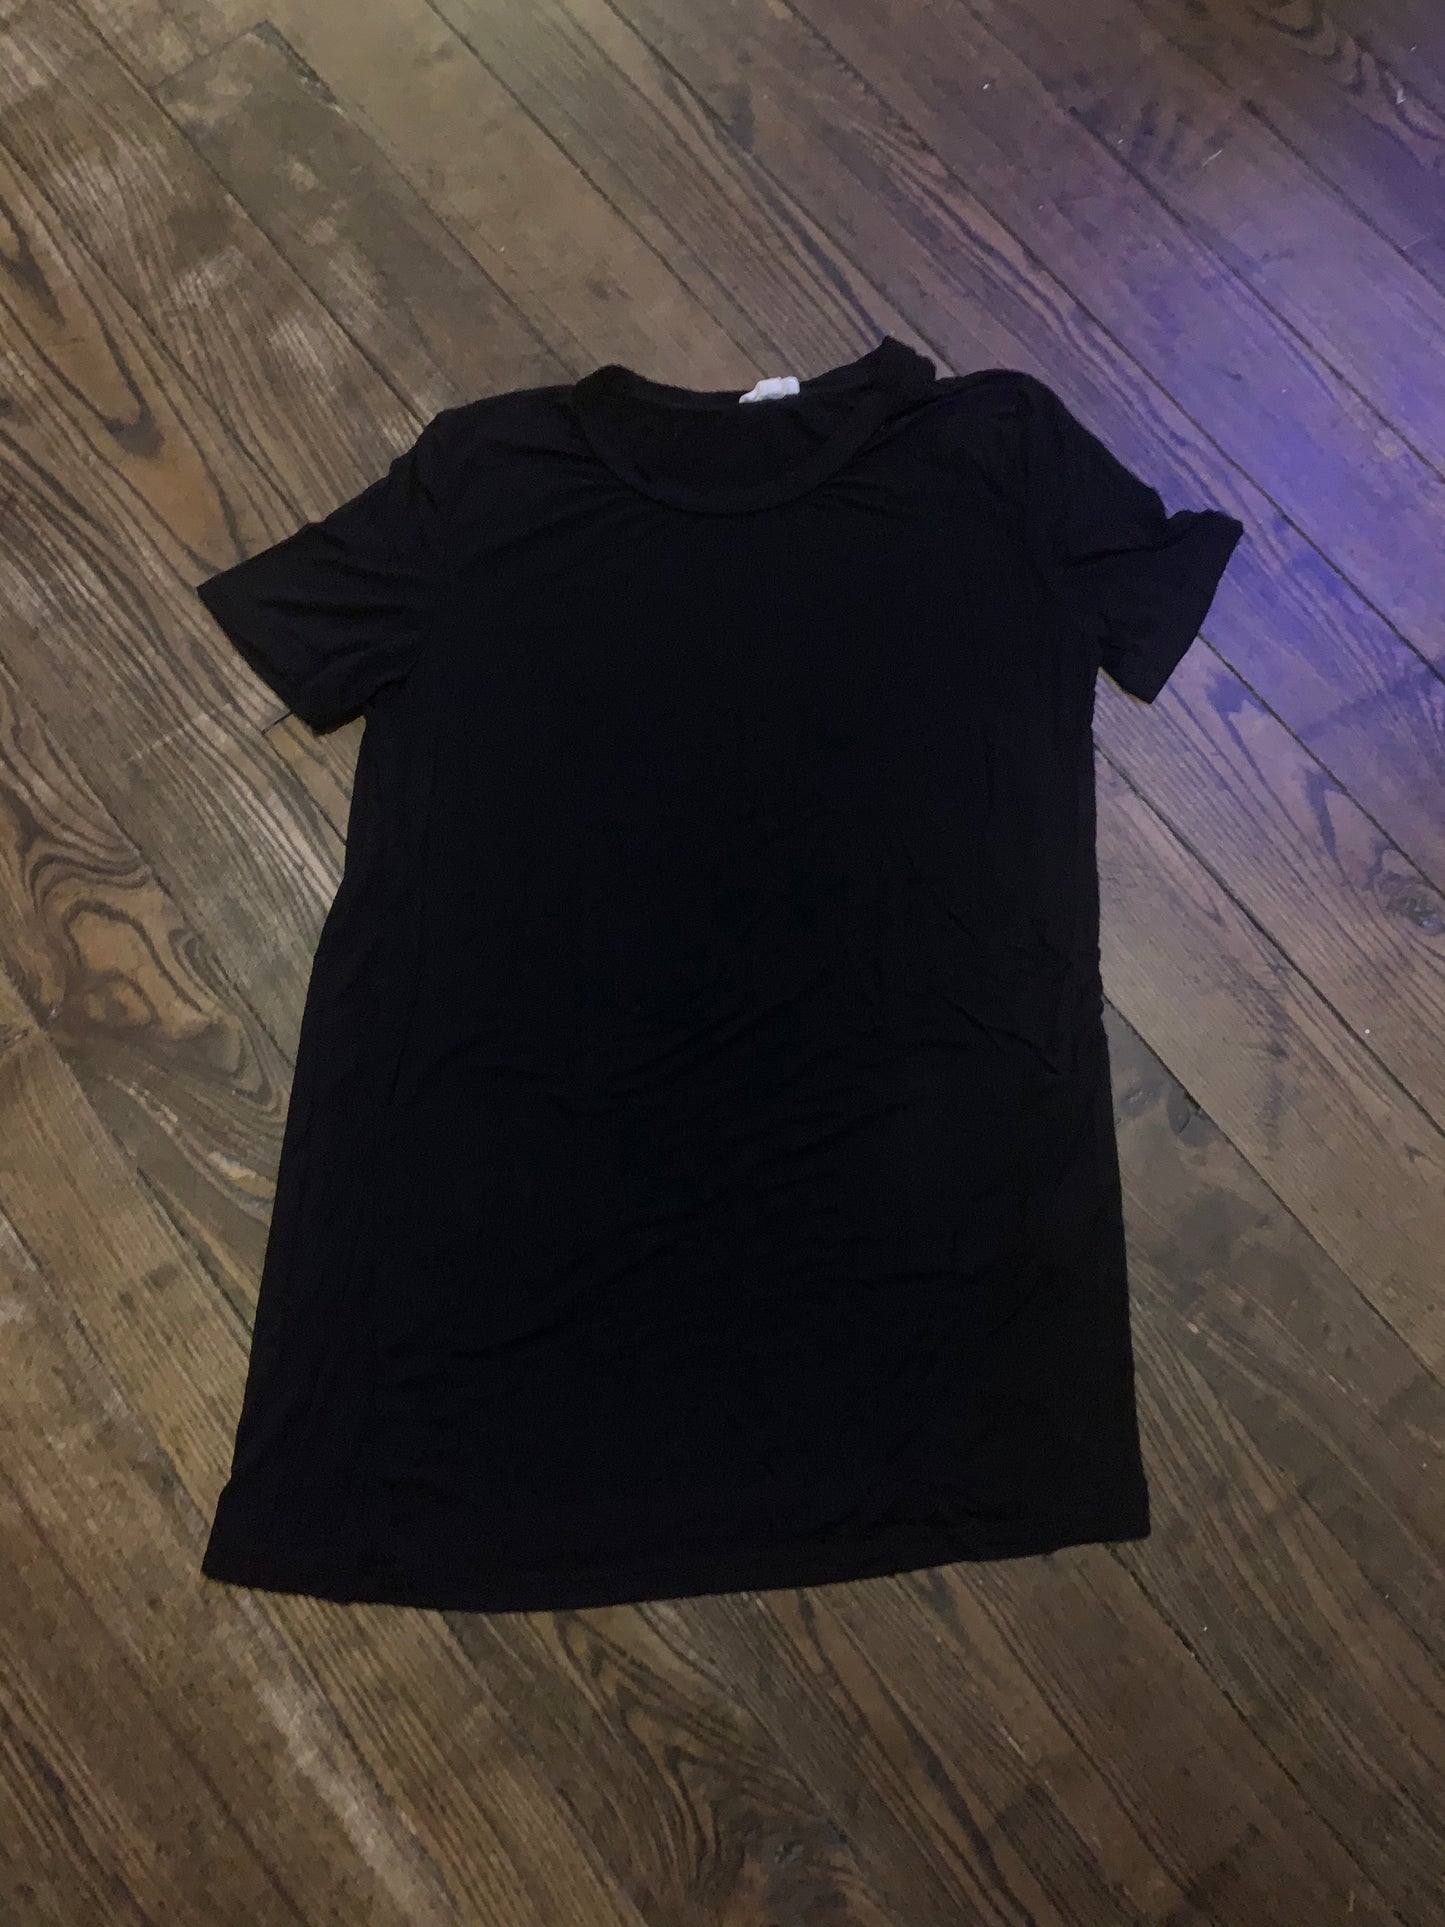 Camiseta supersuave en negro